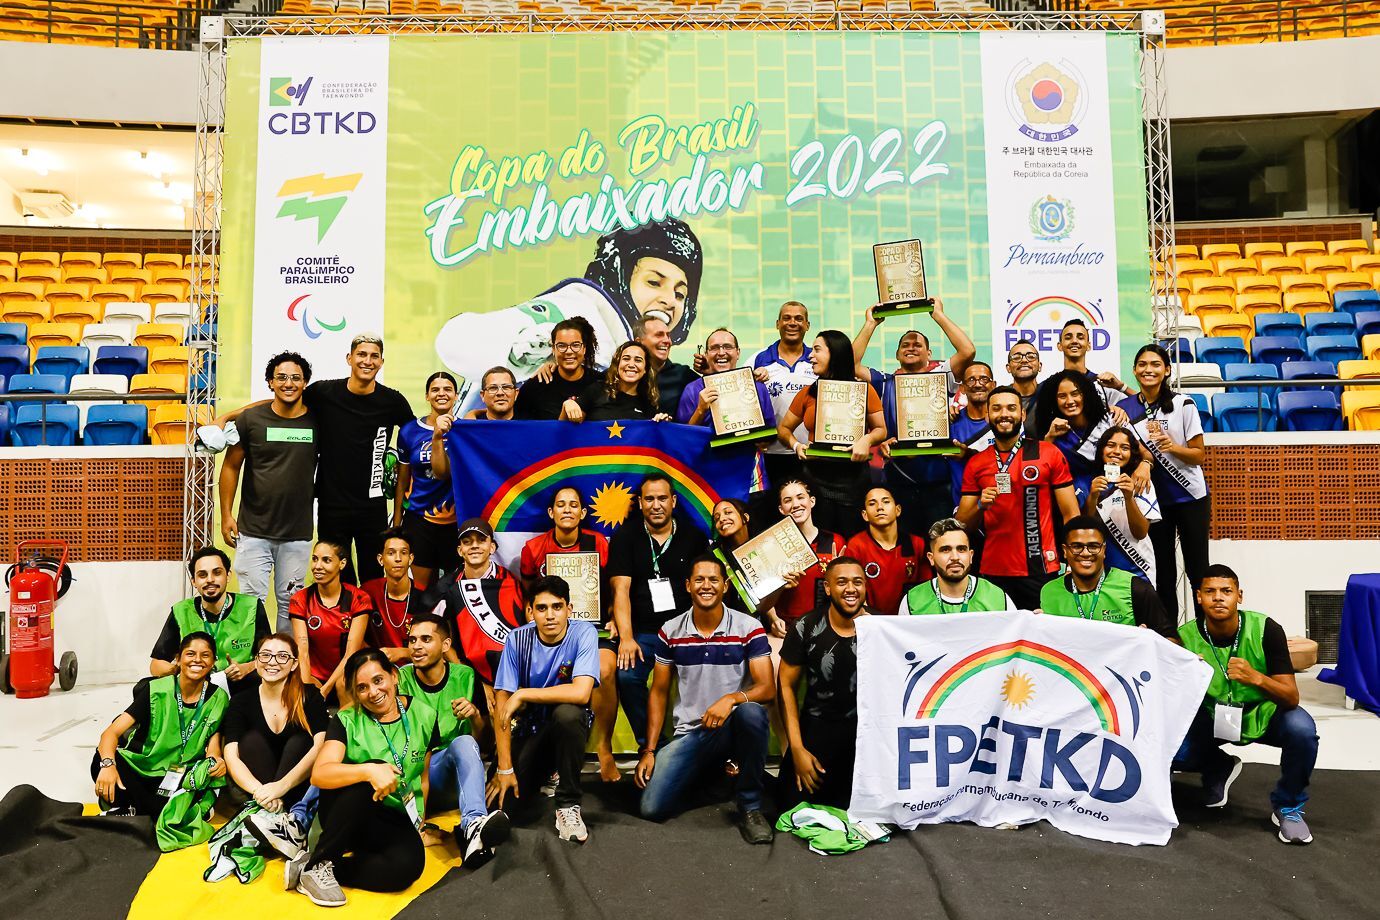 Dona da casa, Seleção Pernambucana é campeã geral da “Copa do Brasil Embaixador 2022”